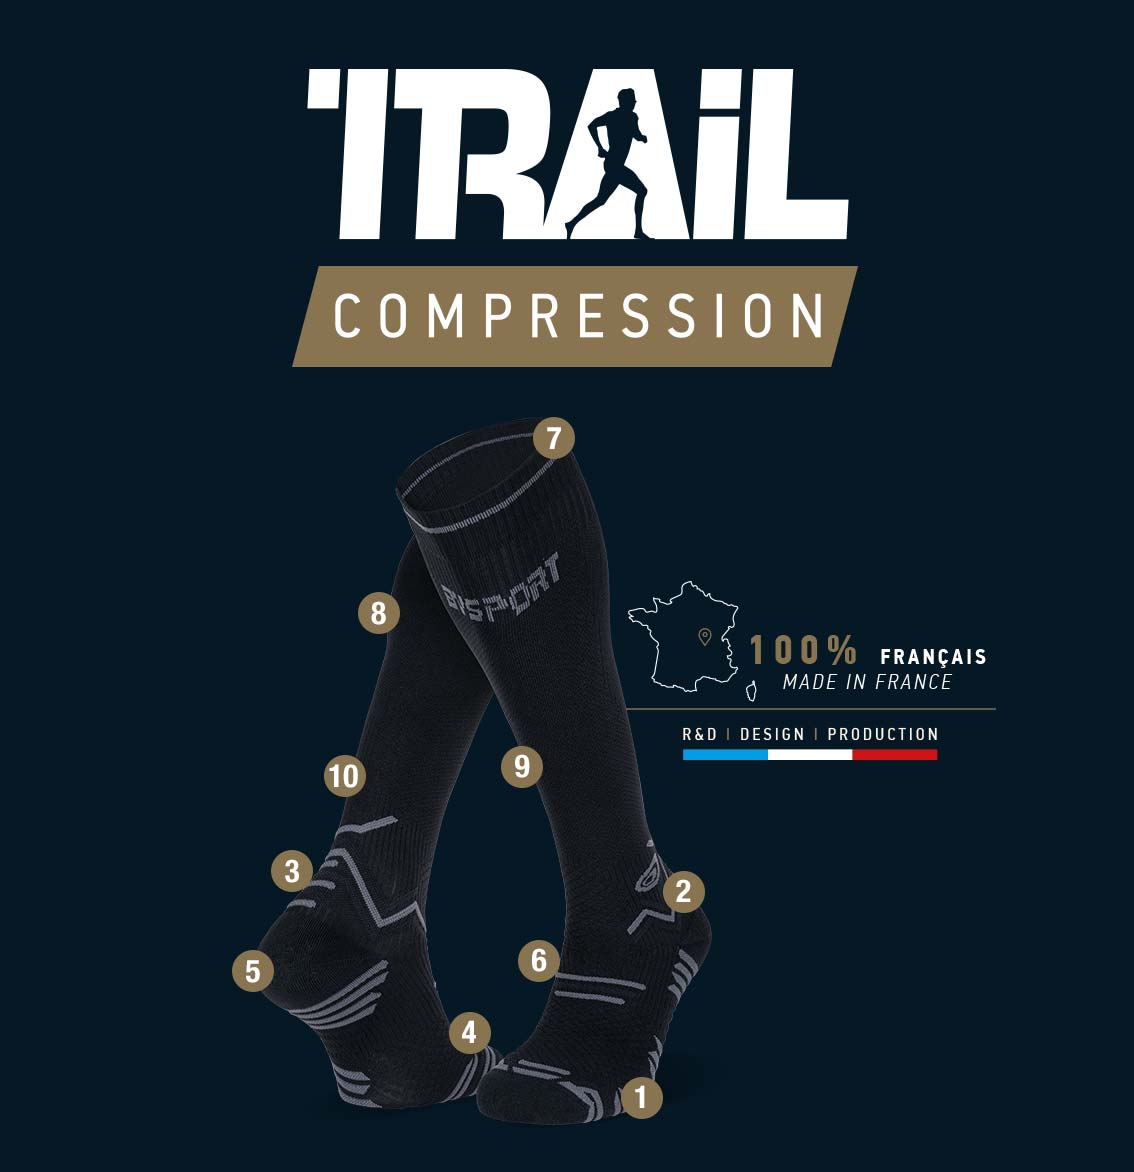 Chaussettes_trail_compression_noir-gris